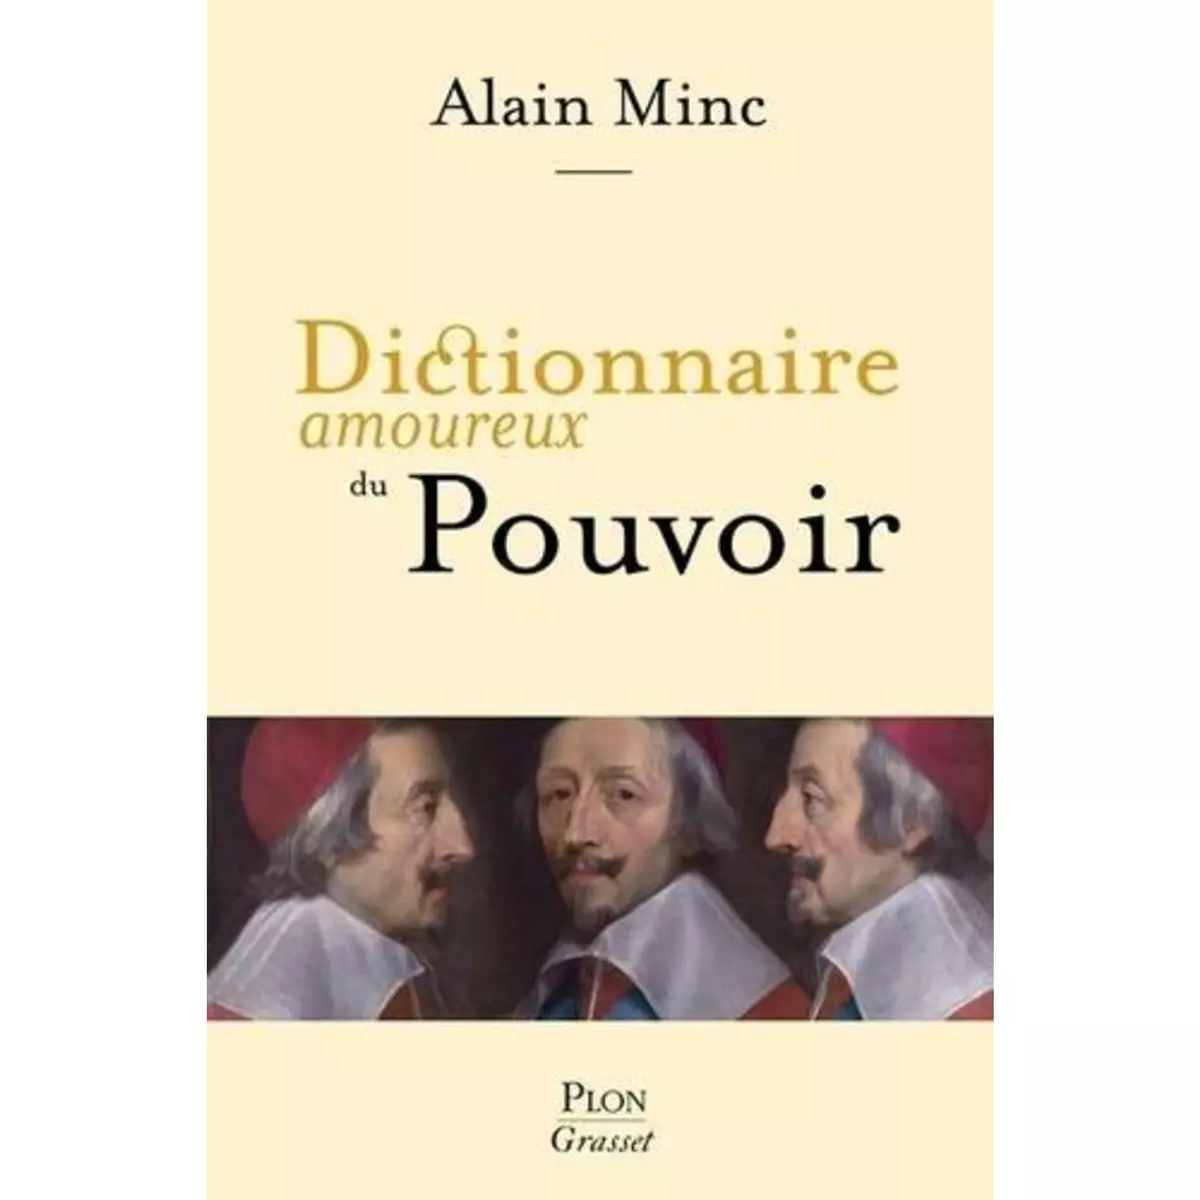  DICTIONNAIRE AMOUREUX DU POUVOIR, Minc Alain